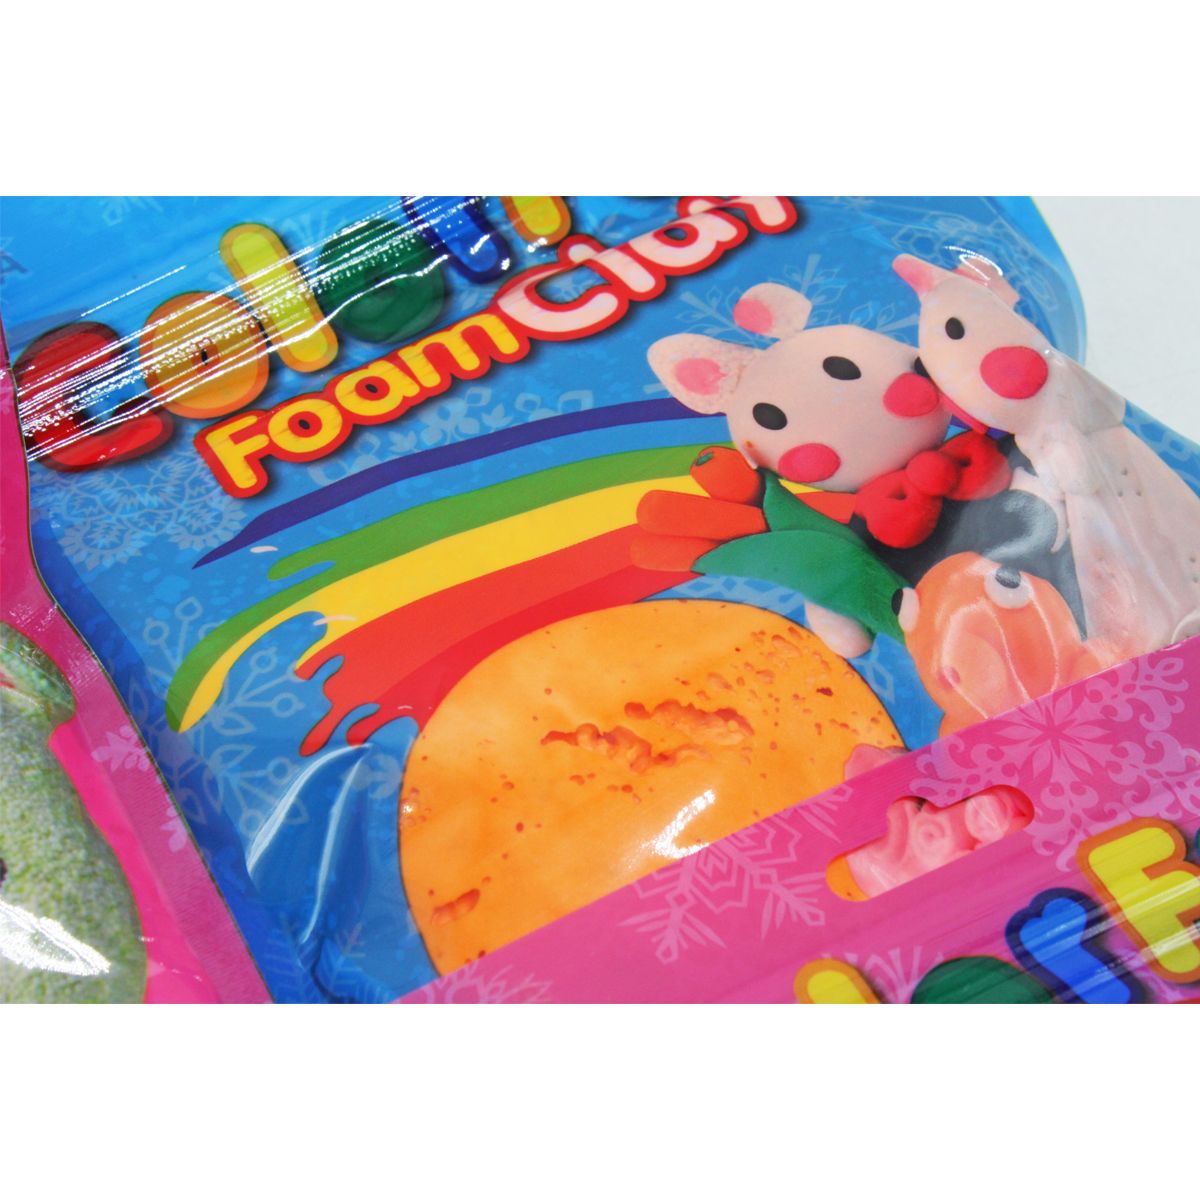 Повітряний пластилін у пакетах "Color Fun" (6 пакетів)